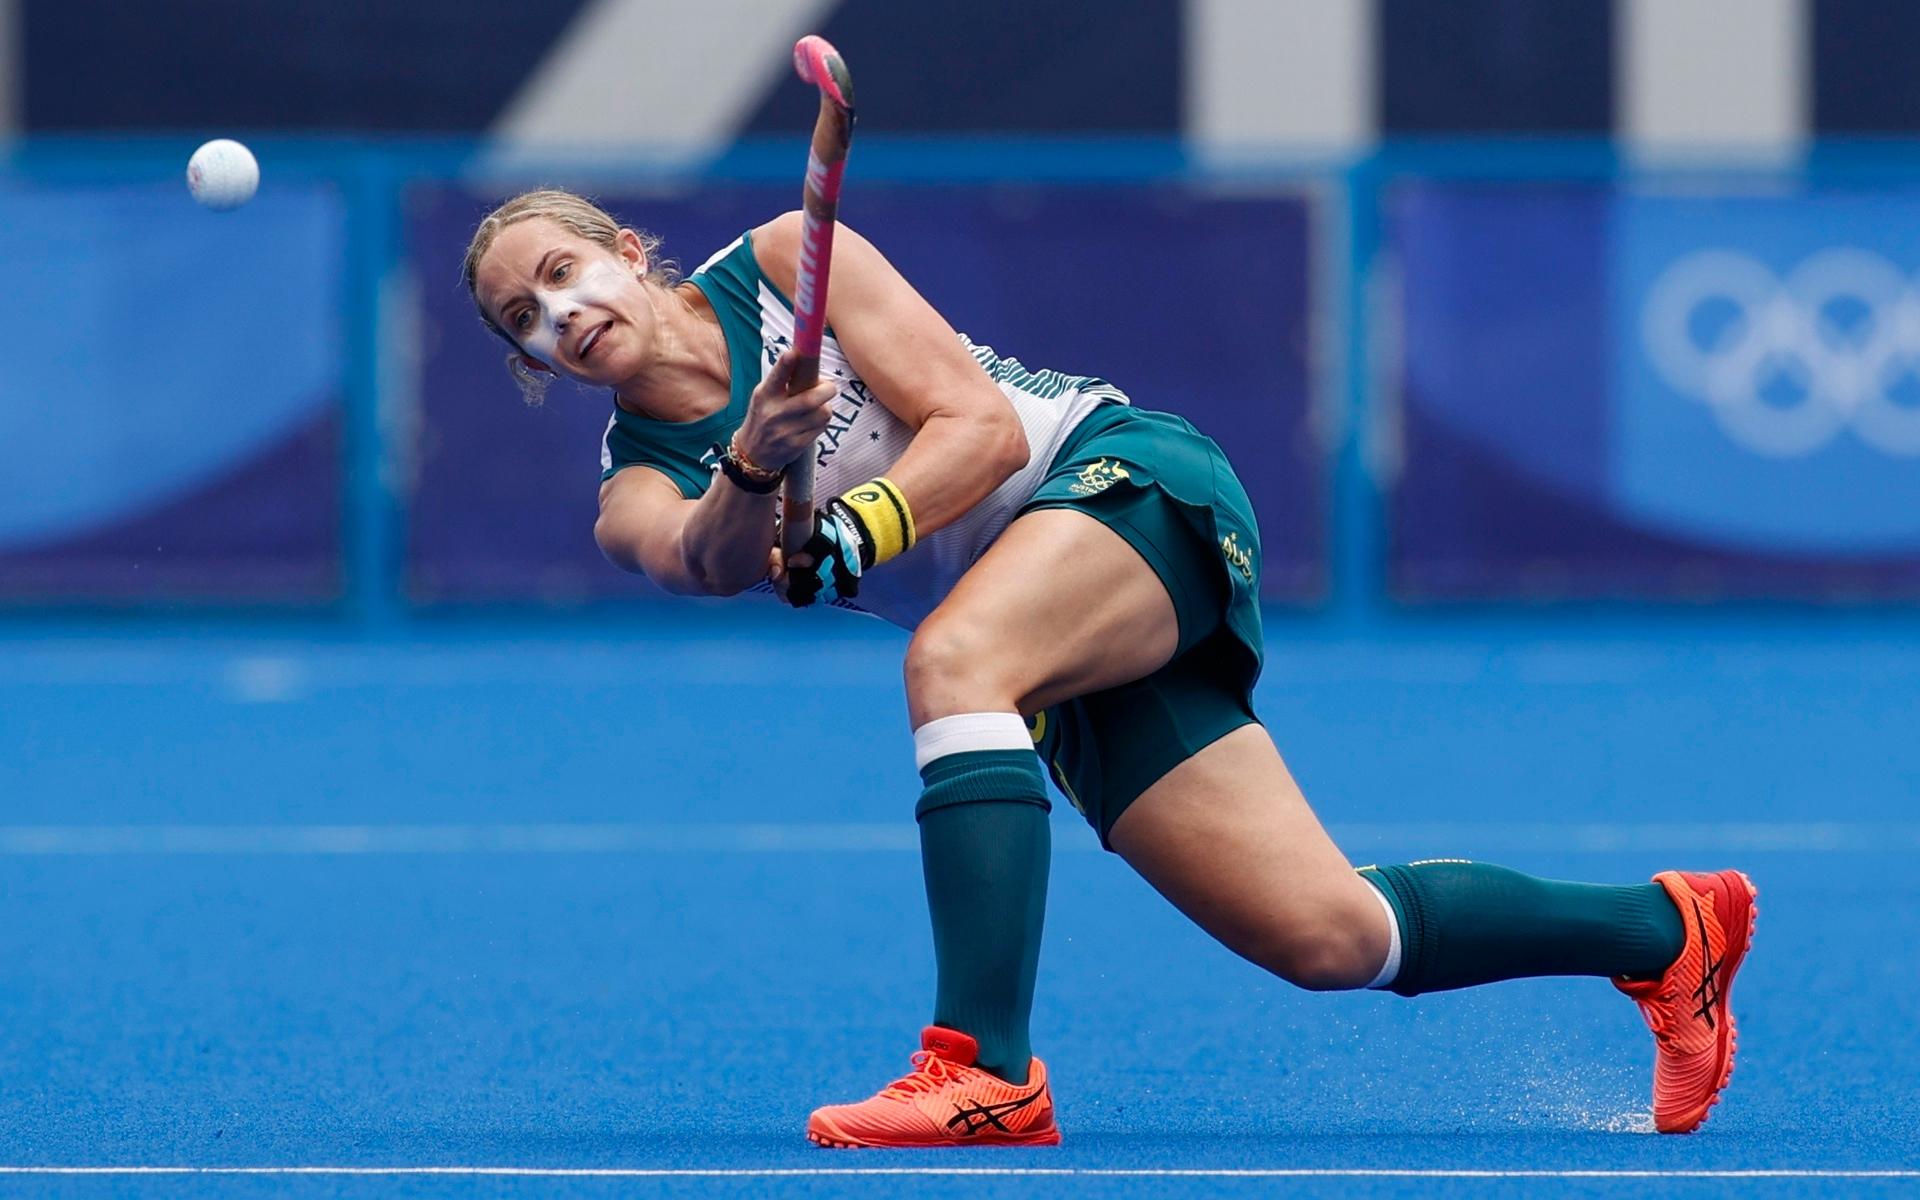 Australiens landhockeyspelare Edwina Bone med en passning under matchen mot Kina.